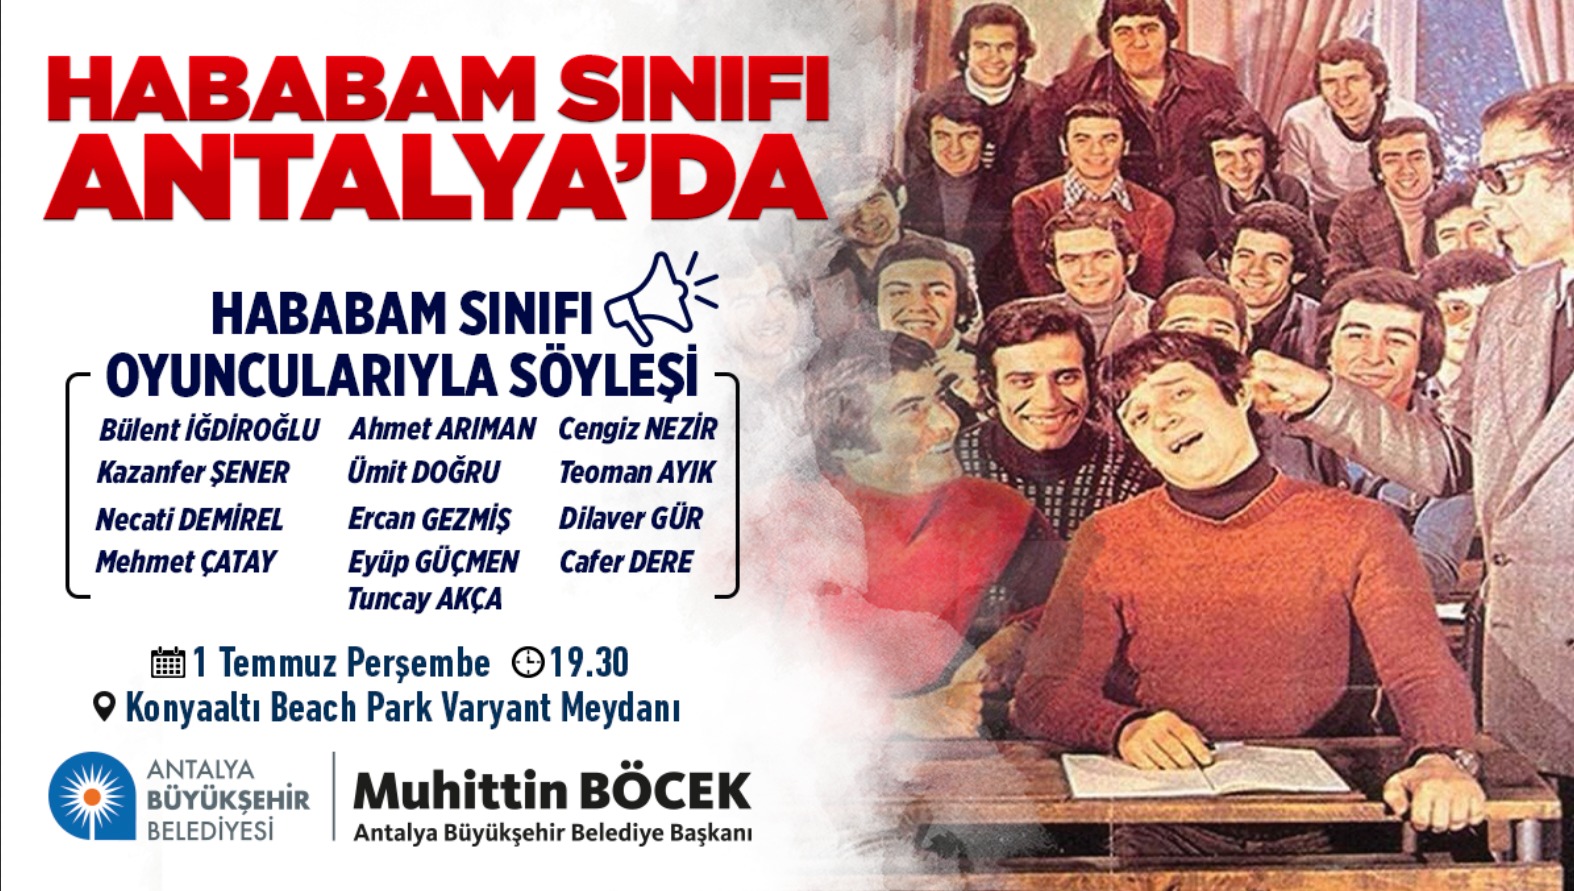 Hababam Sınıfı Antalya'da